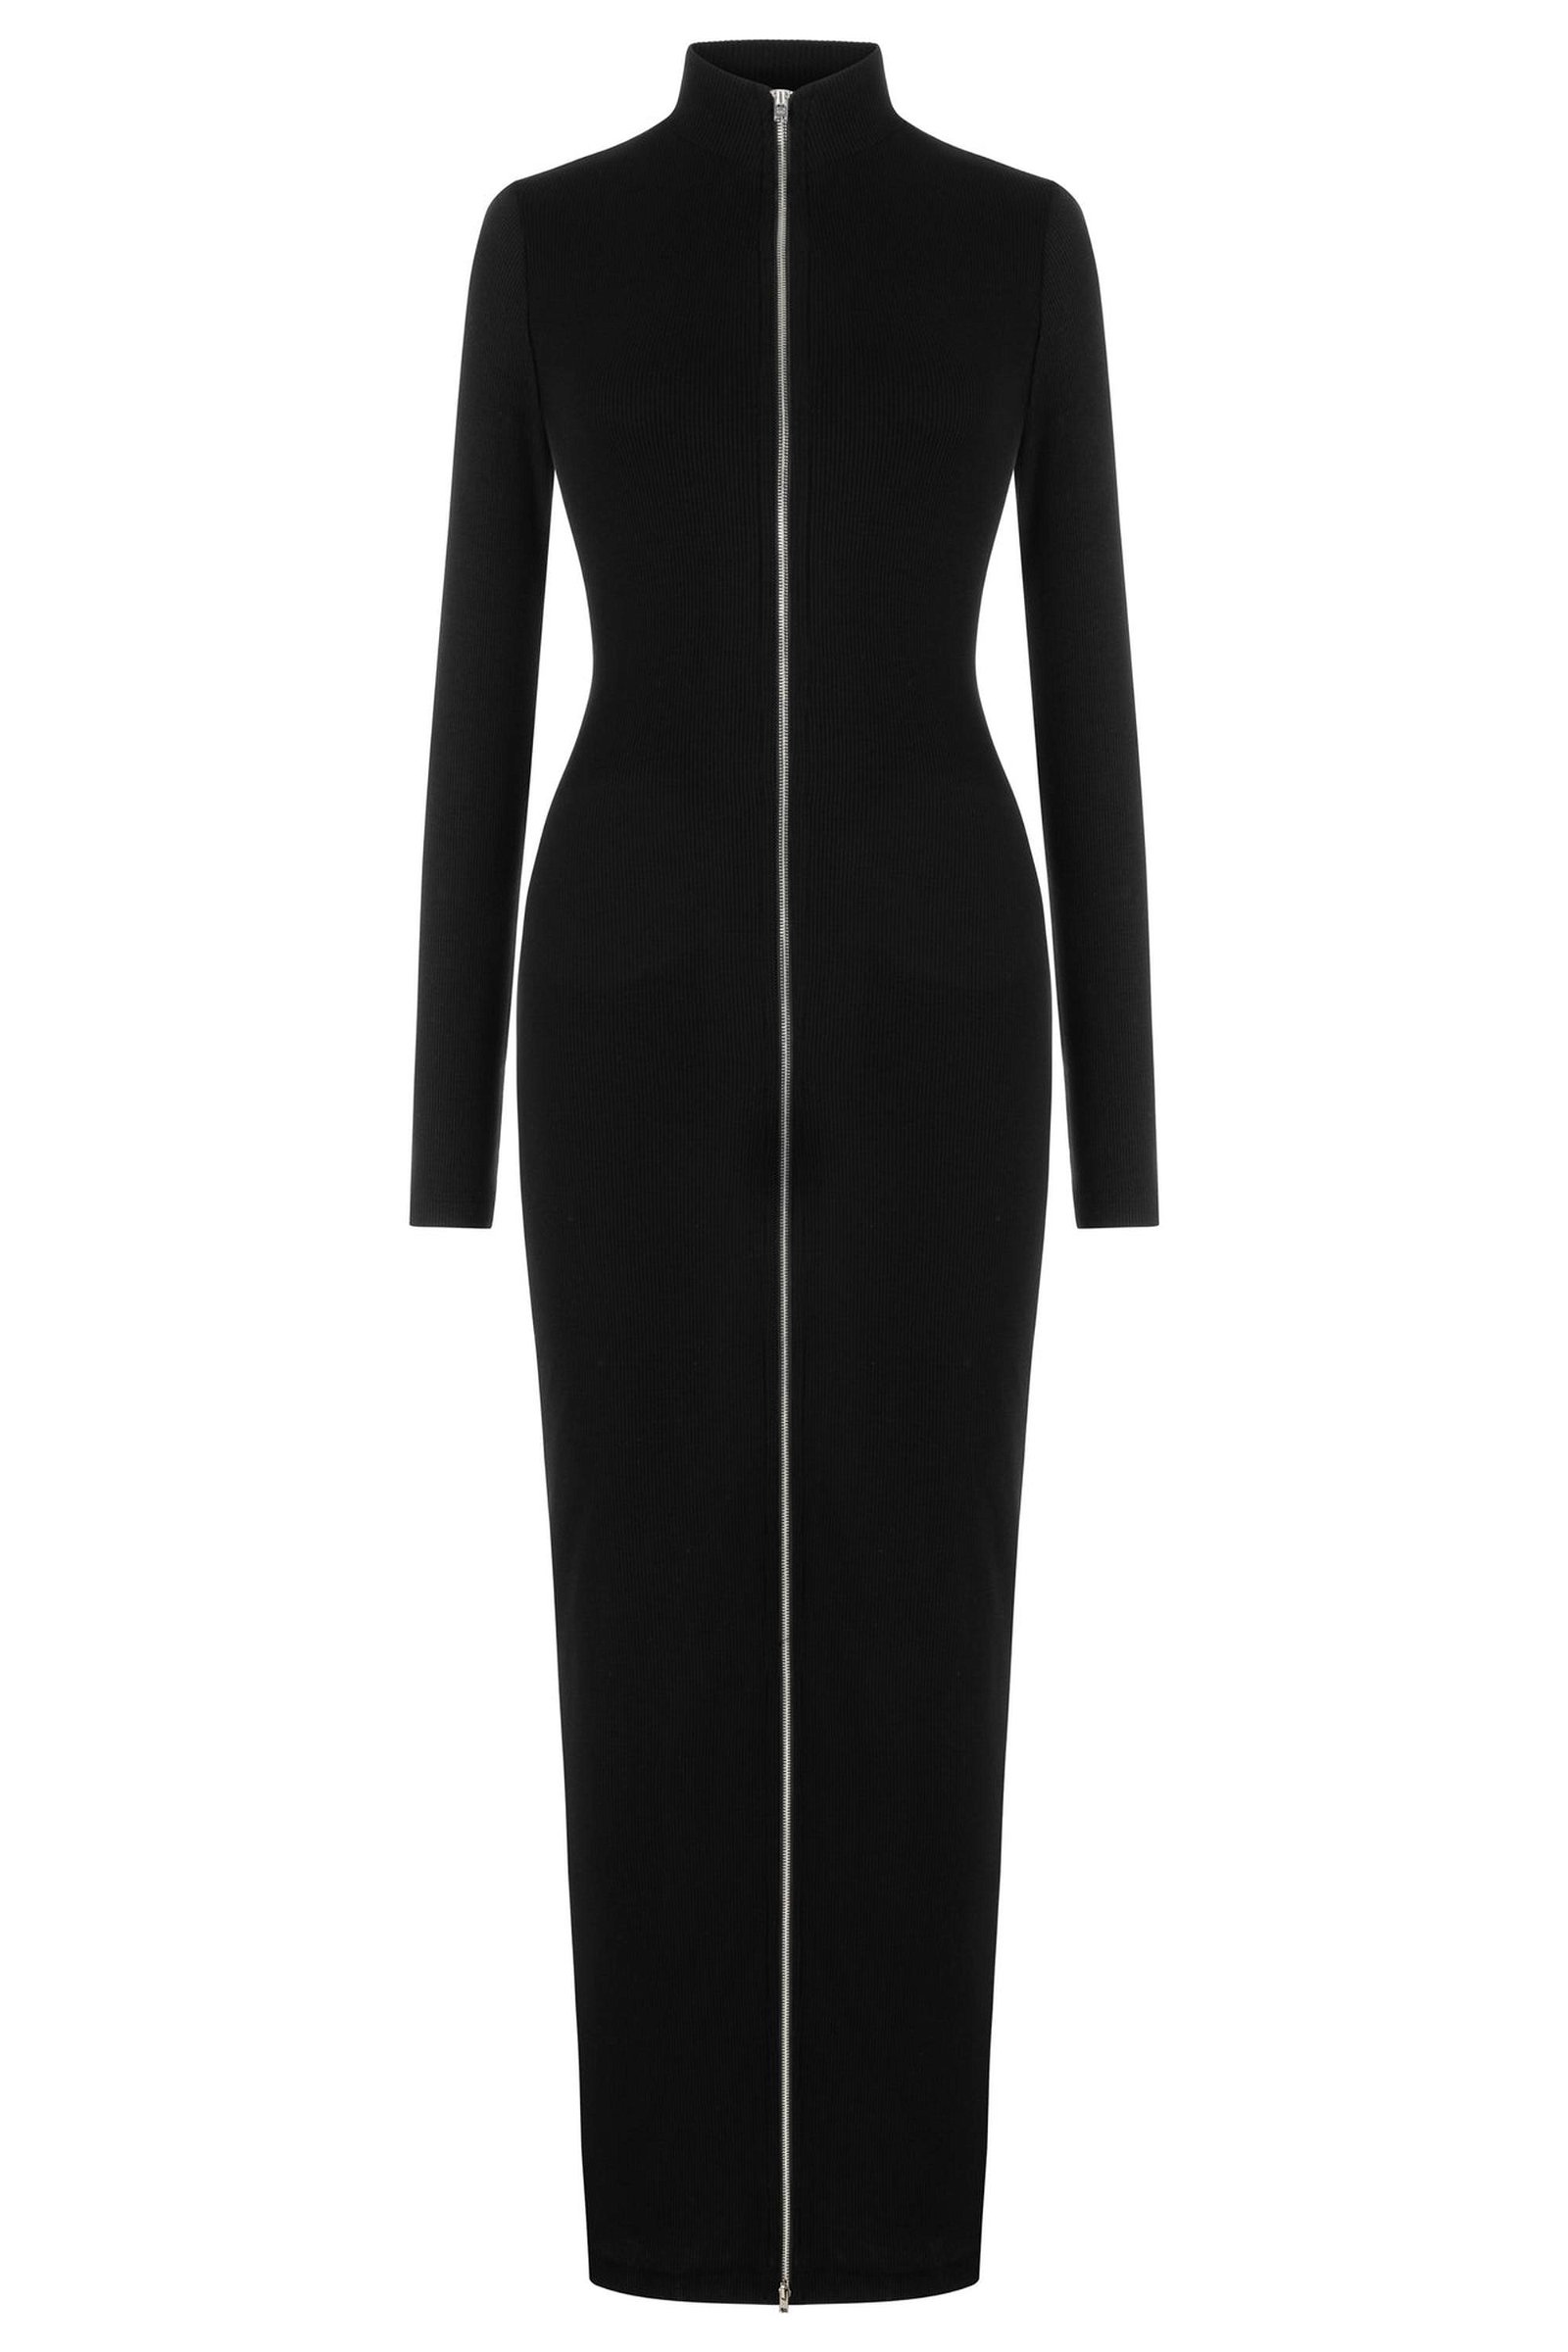 Khela The Label Kadın Transient Elbise Siyah